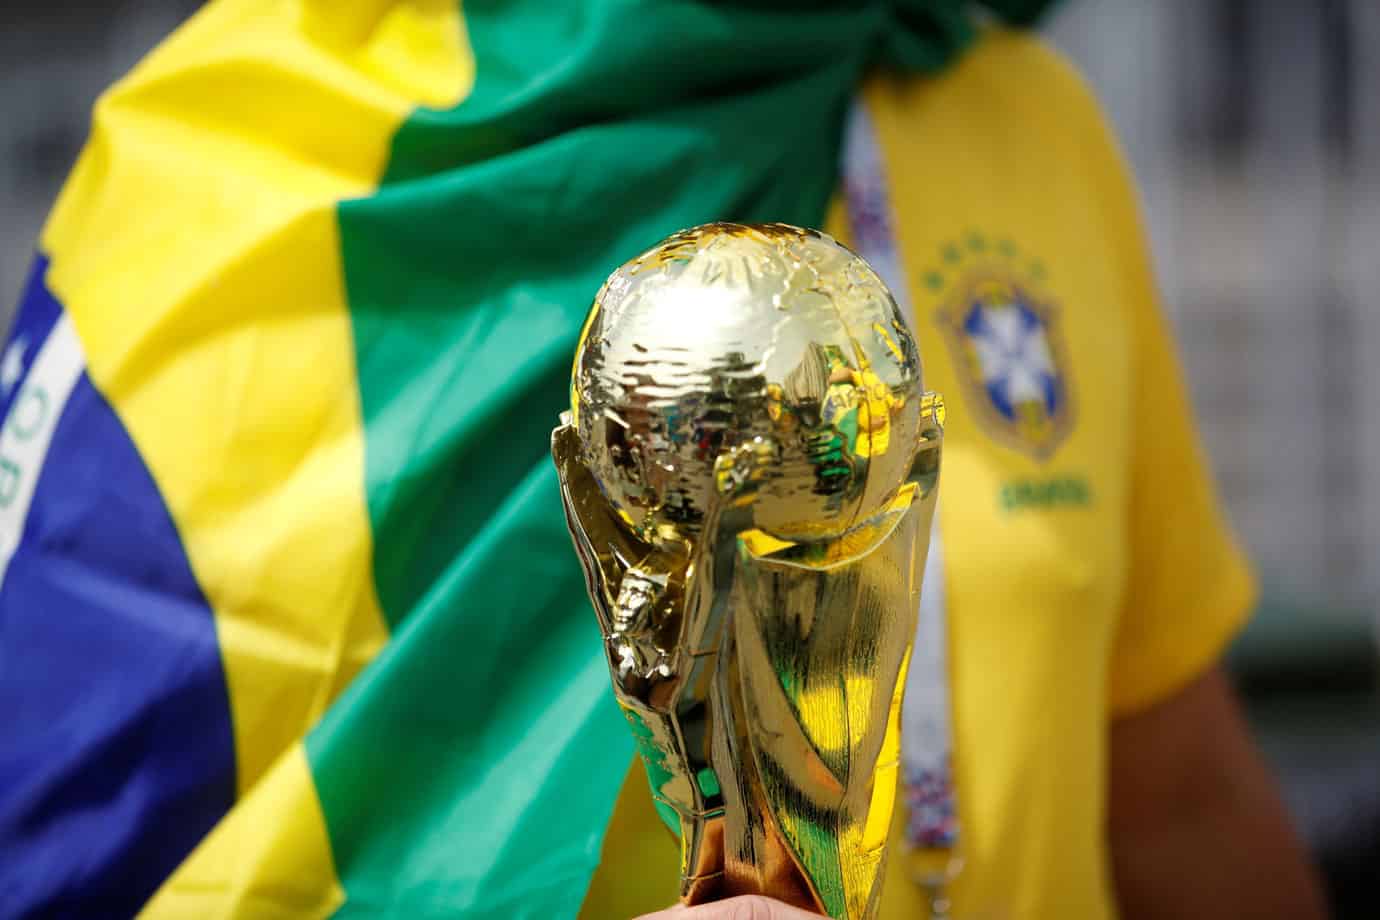 A história do futebol: O esporte tão querido pelos brasileiros